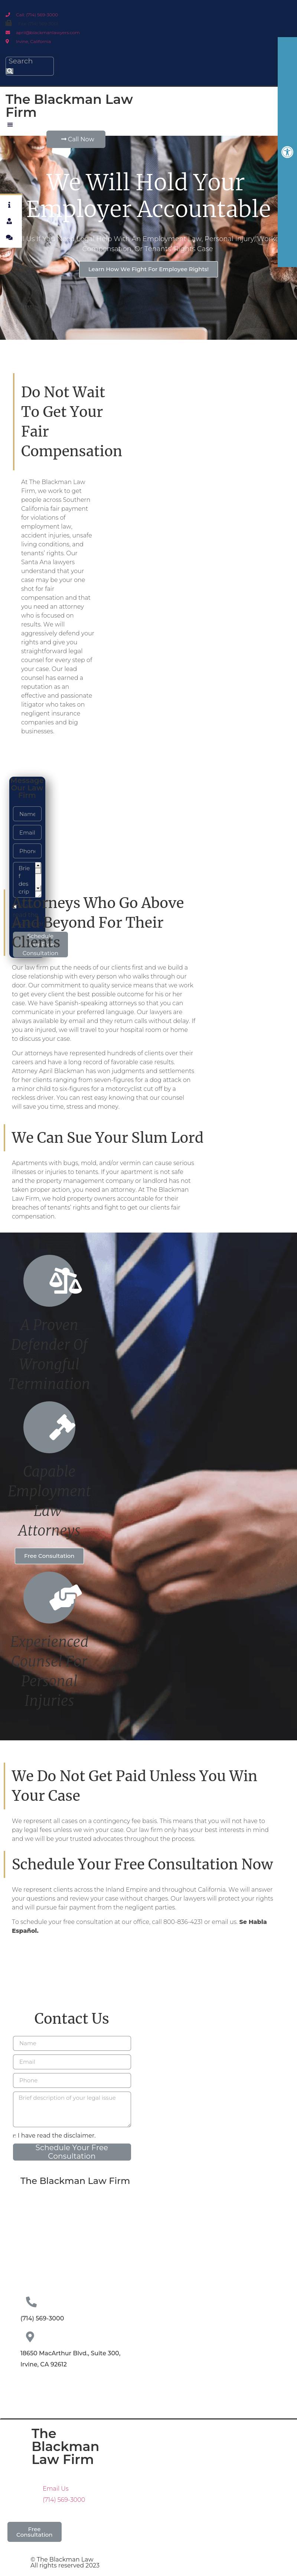 The Blackman Law Firm - Santa Ana CA Lawyers